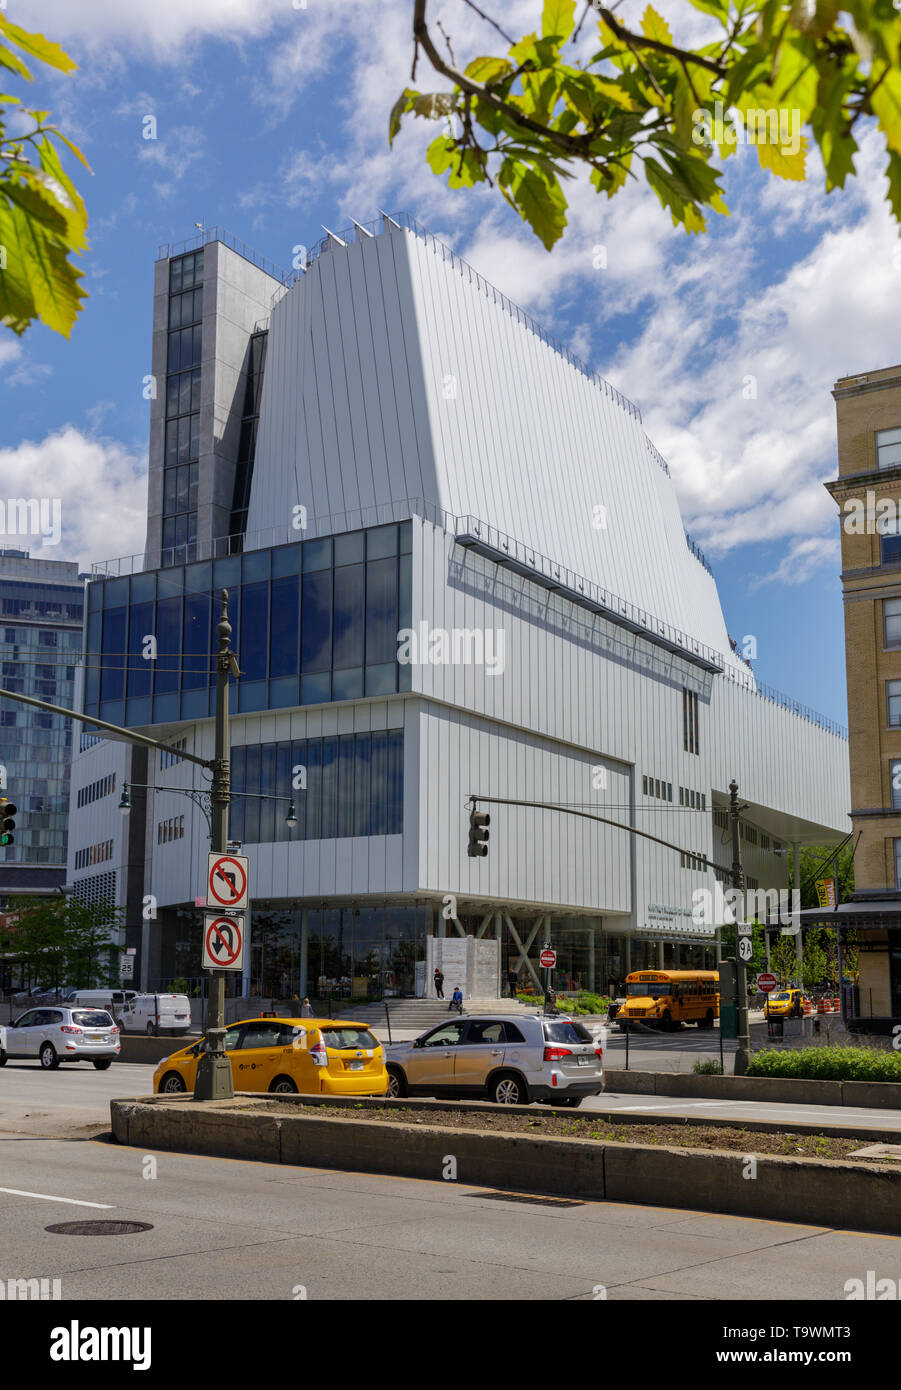 Whitney Museum von Renzo Piano, Säulenfreie Galerien, Meatpacking District, Lower Manhattan, Beginn der High Line, New York City, New York, USA. Stockfoto